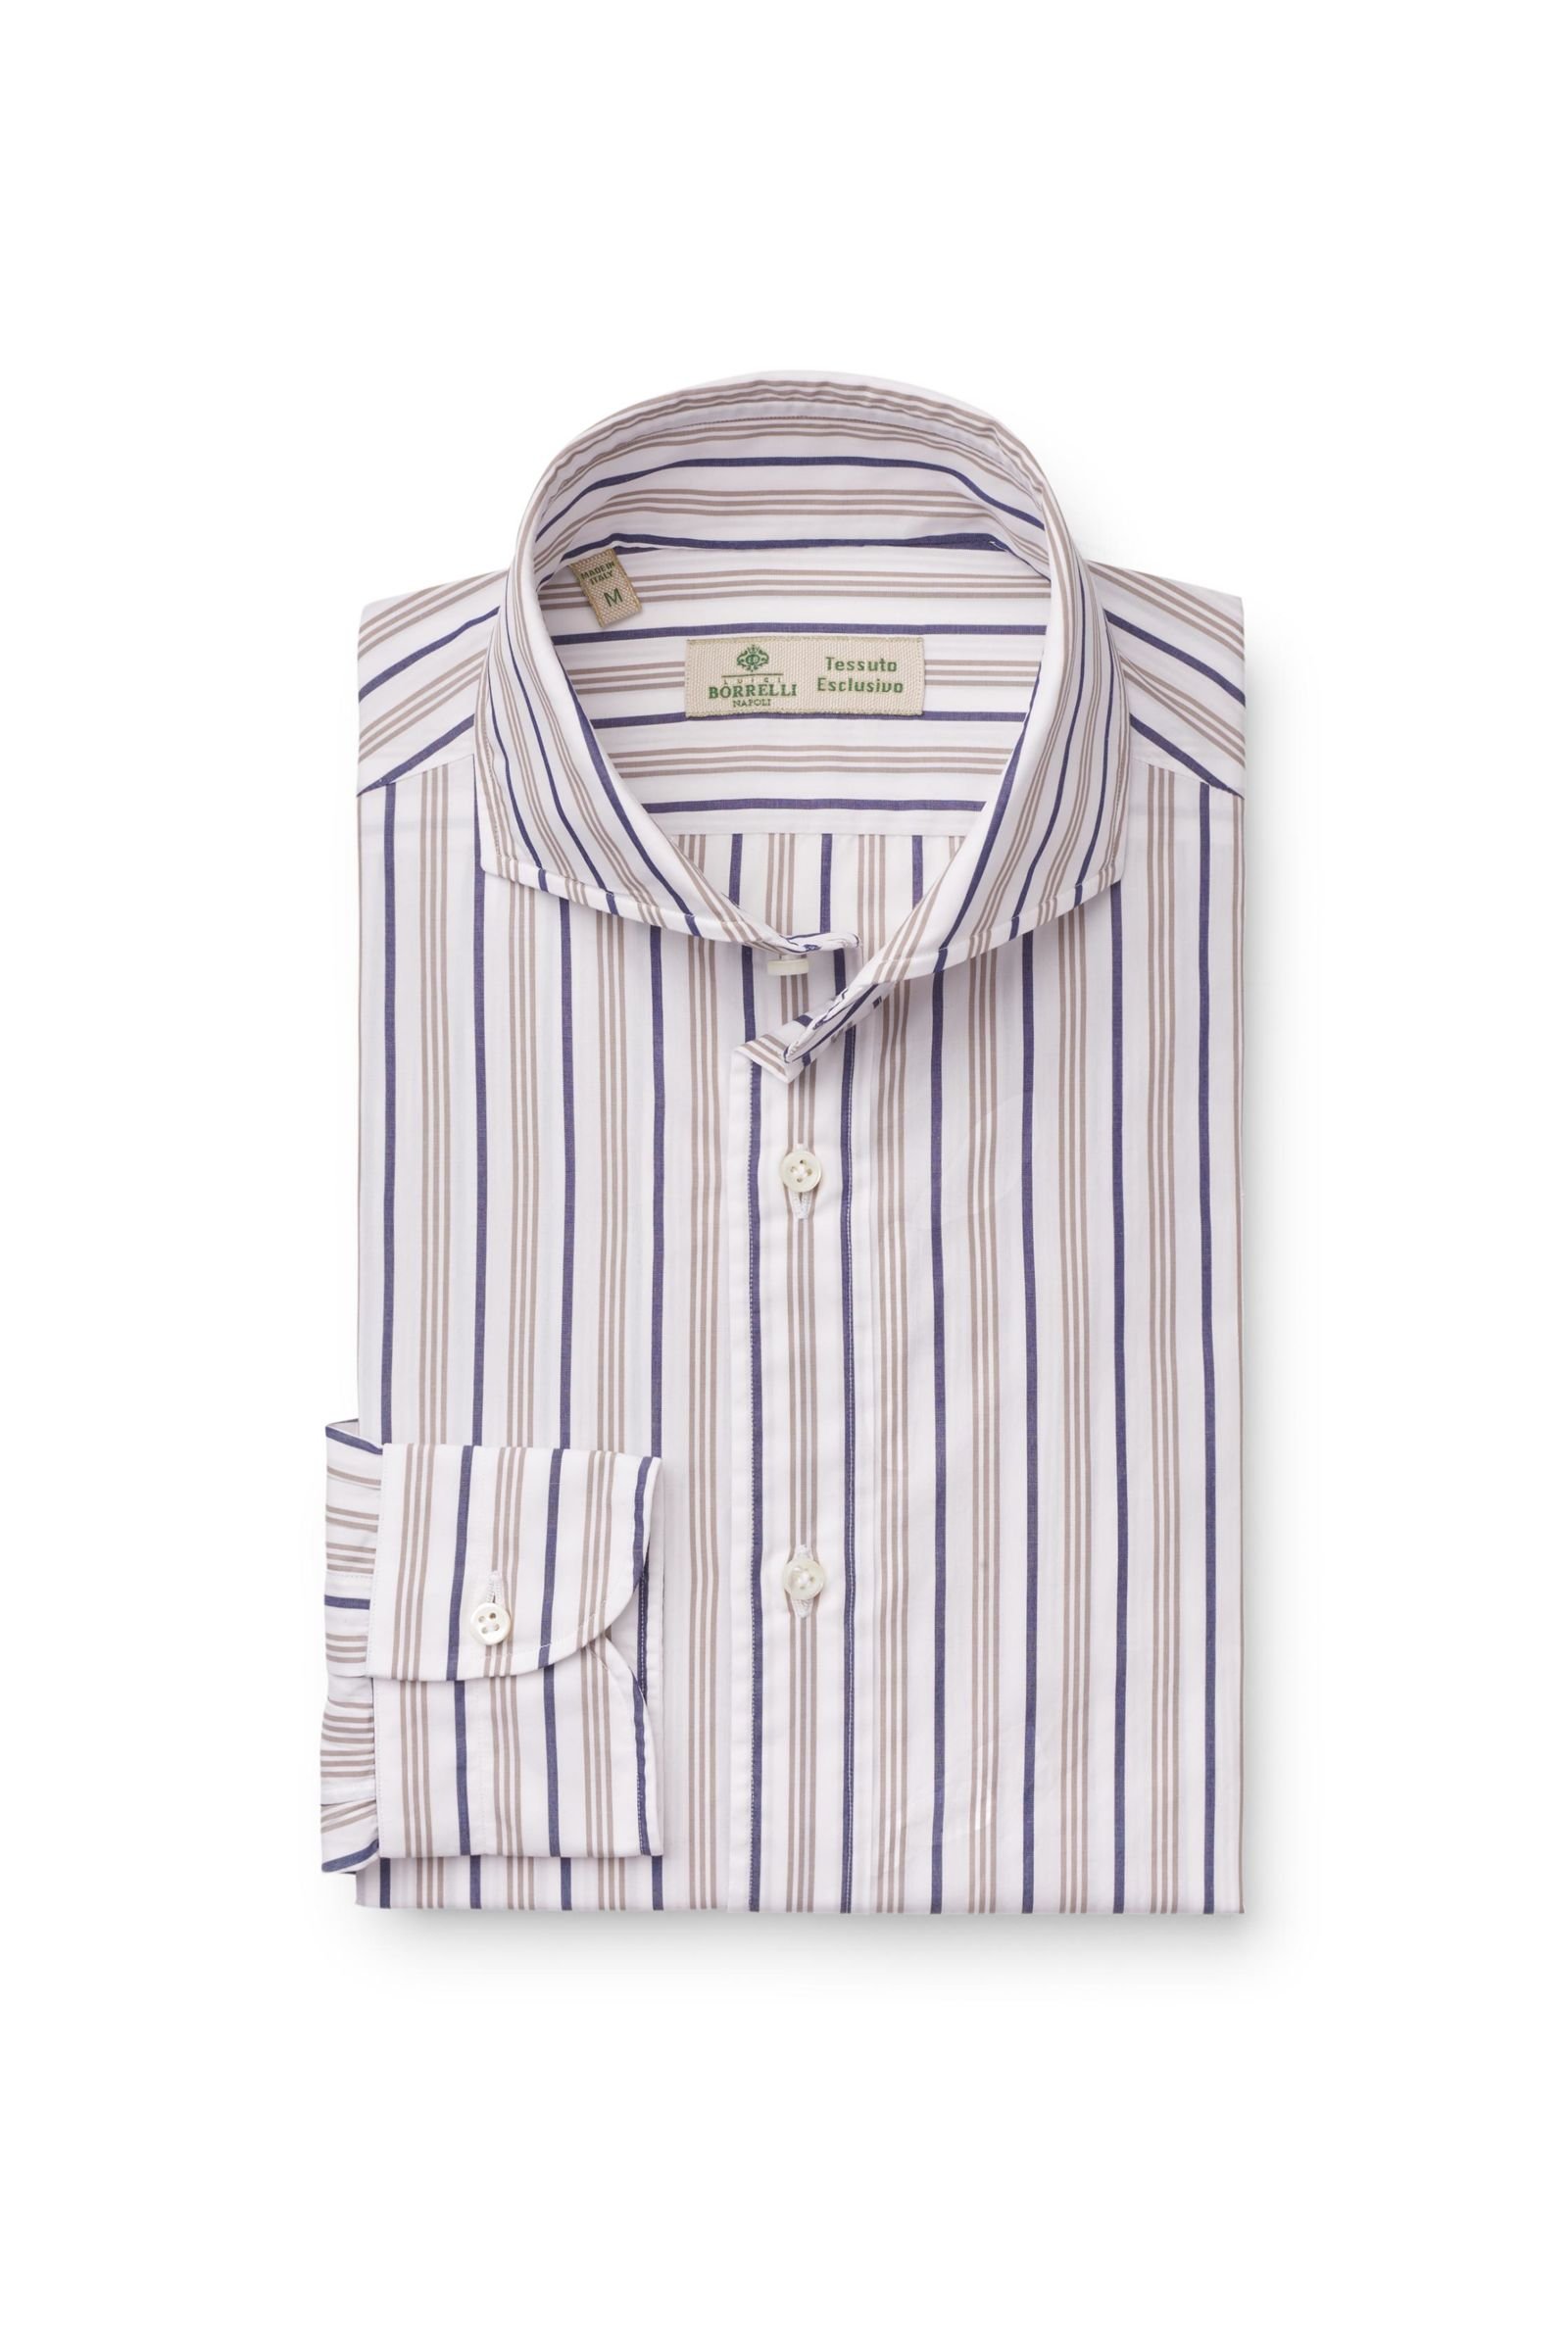 Business shirt shark collar beige/navy striped